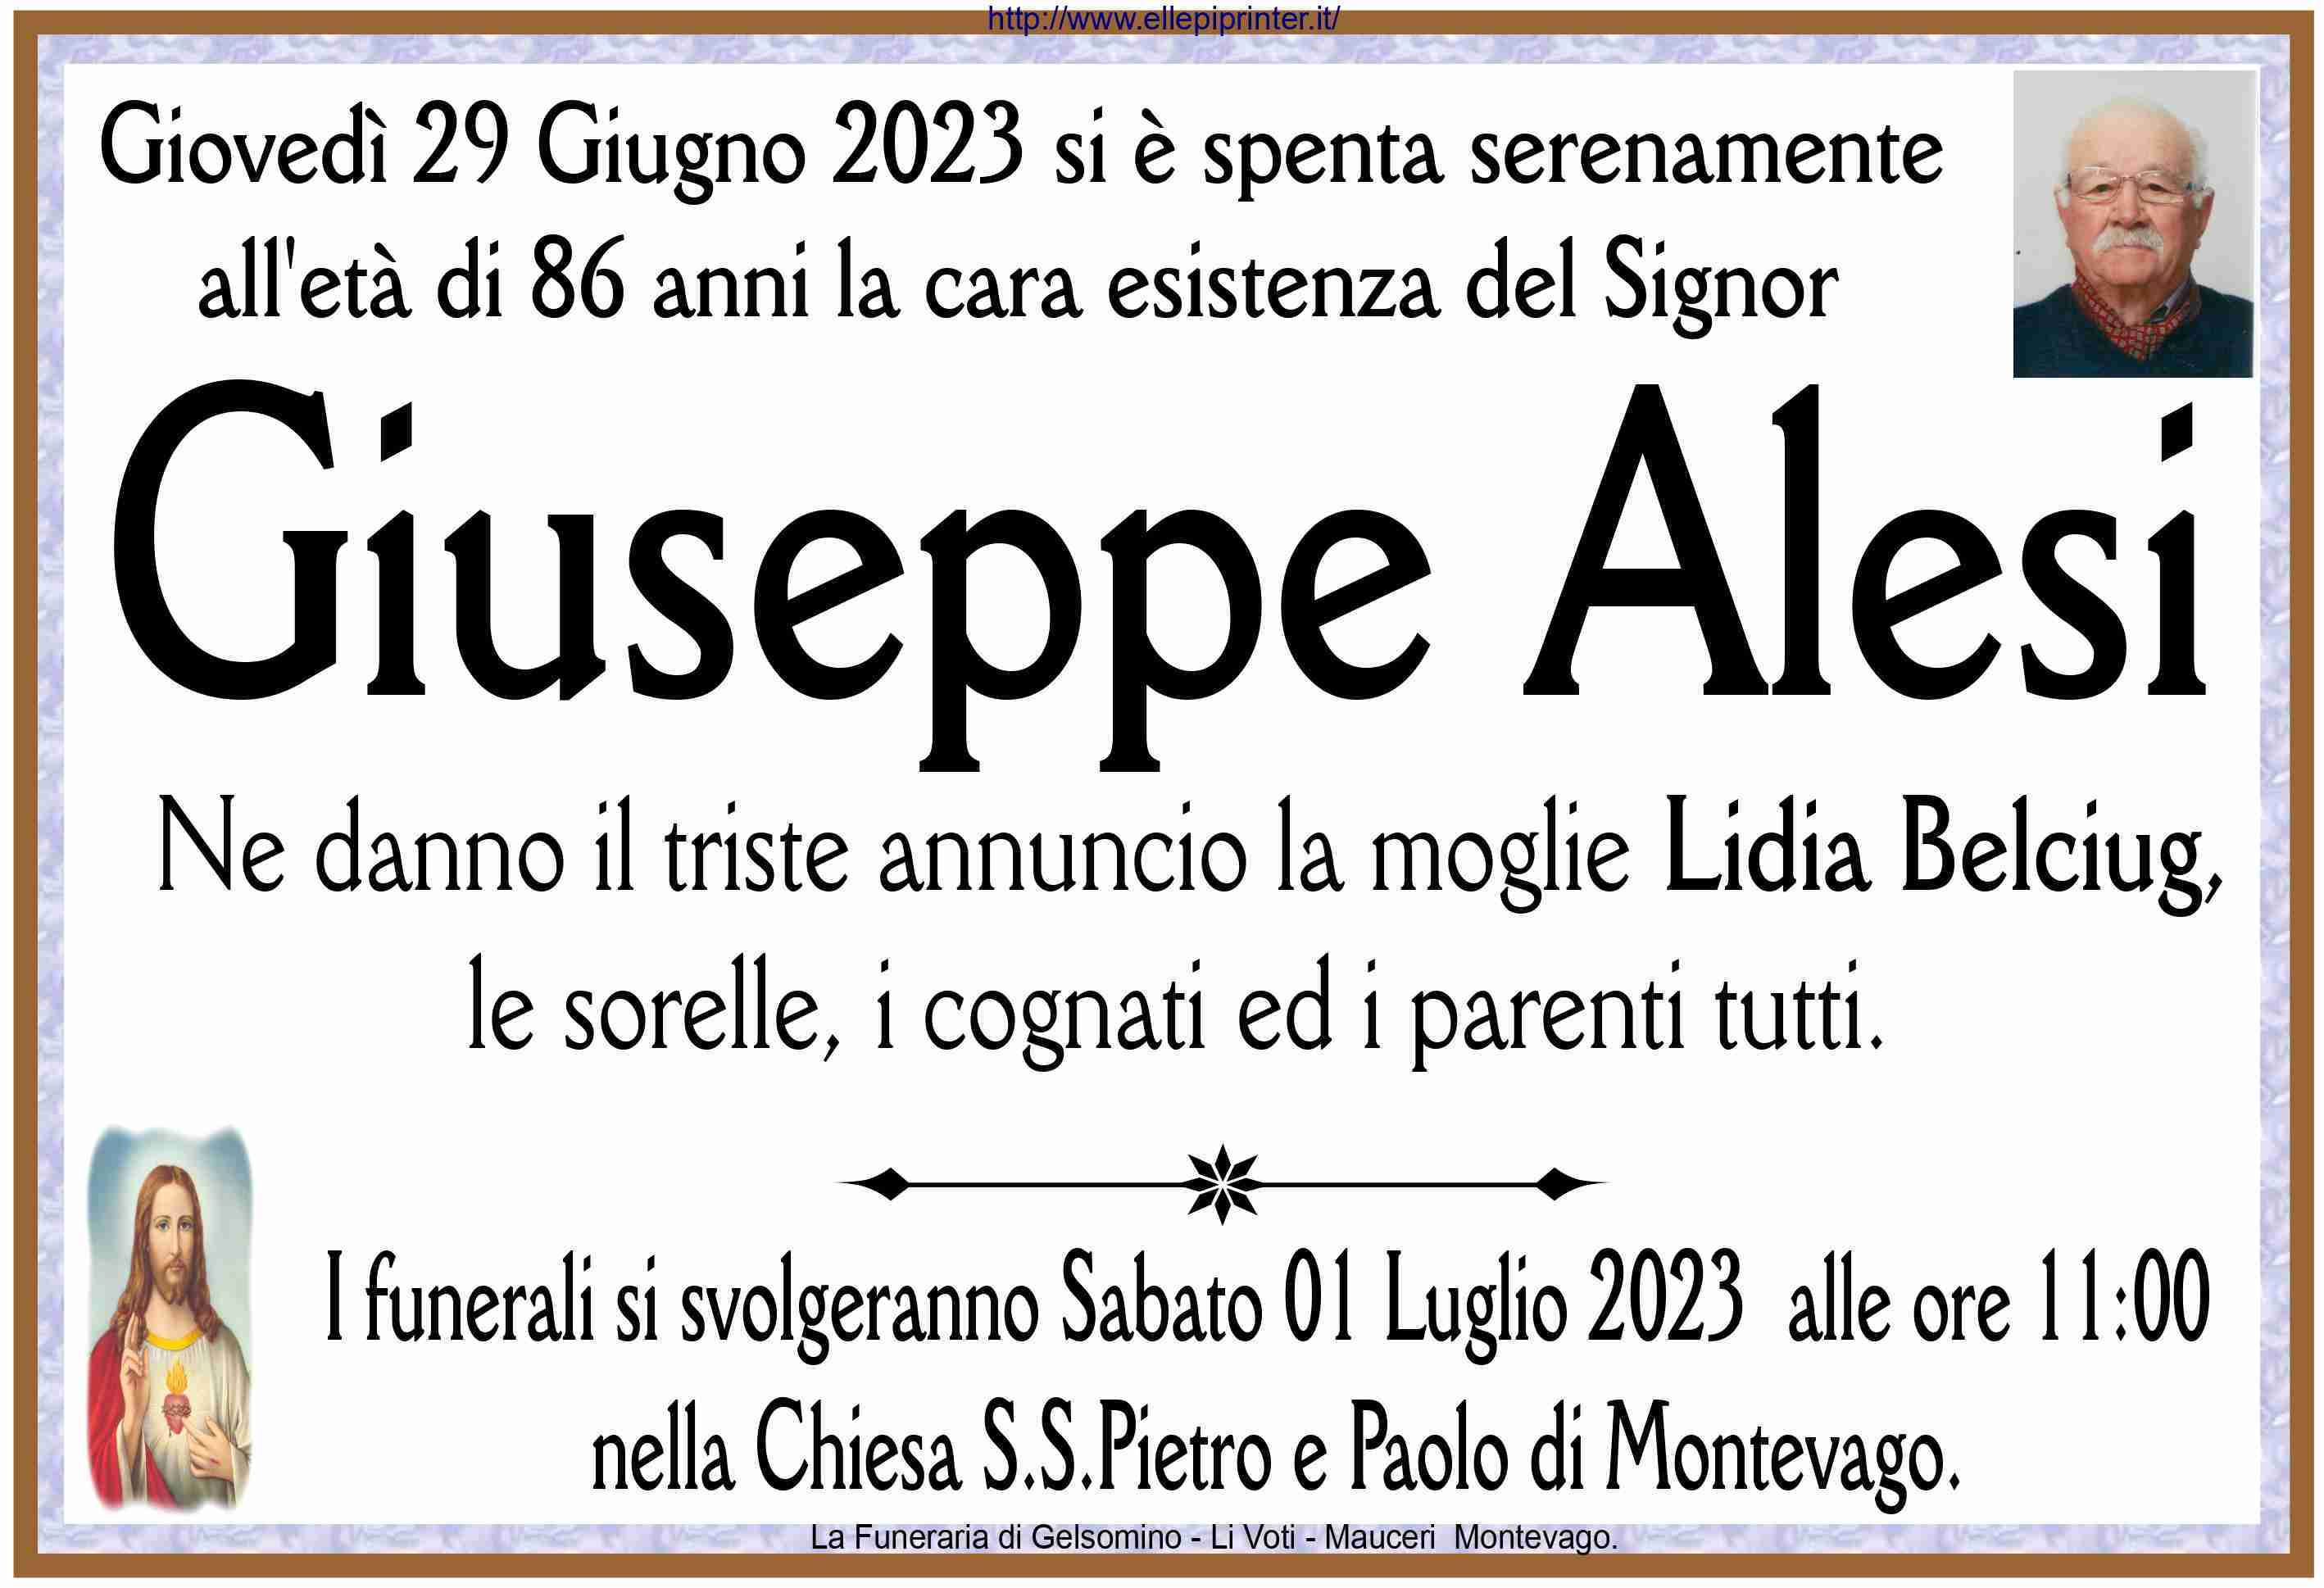 Giuseppe Alesi